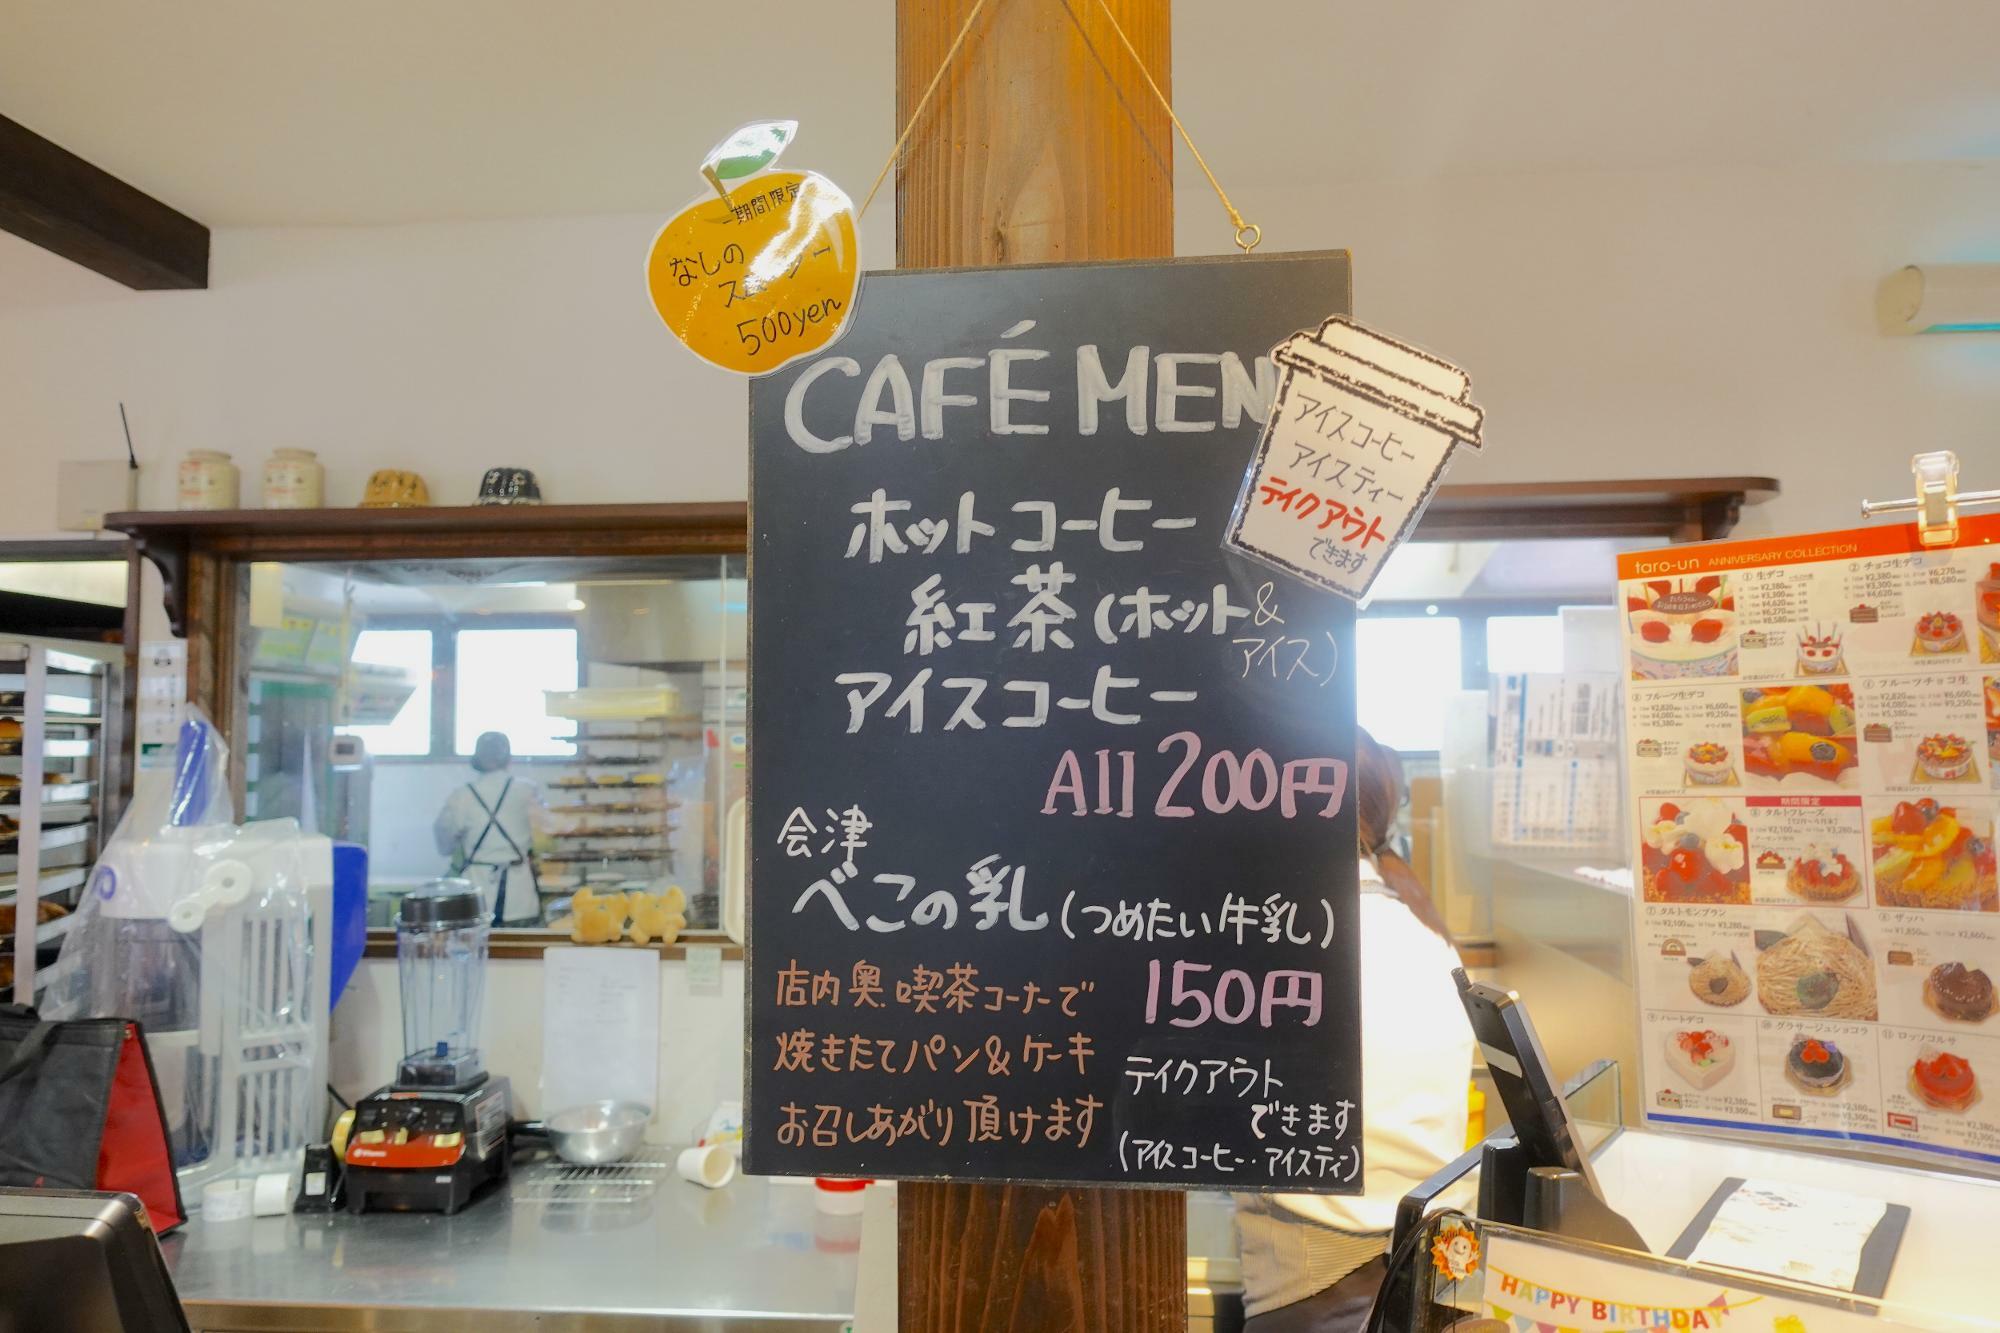 太郎庵 にいでら工房店 喫茶コーナー 有料ドリンク